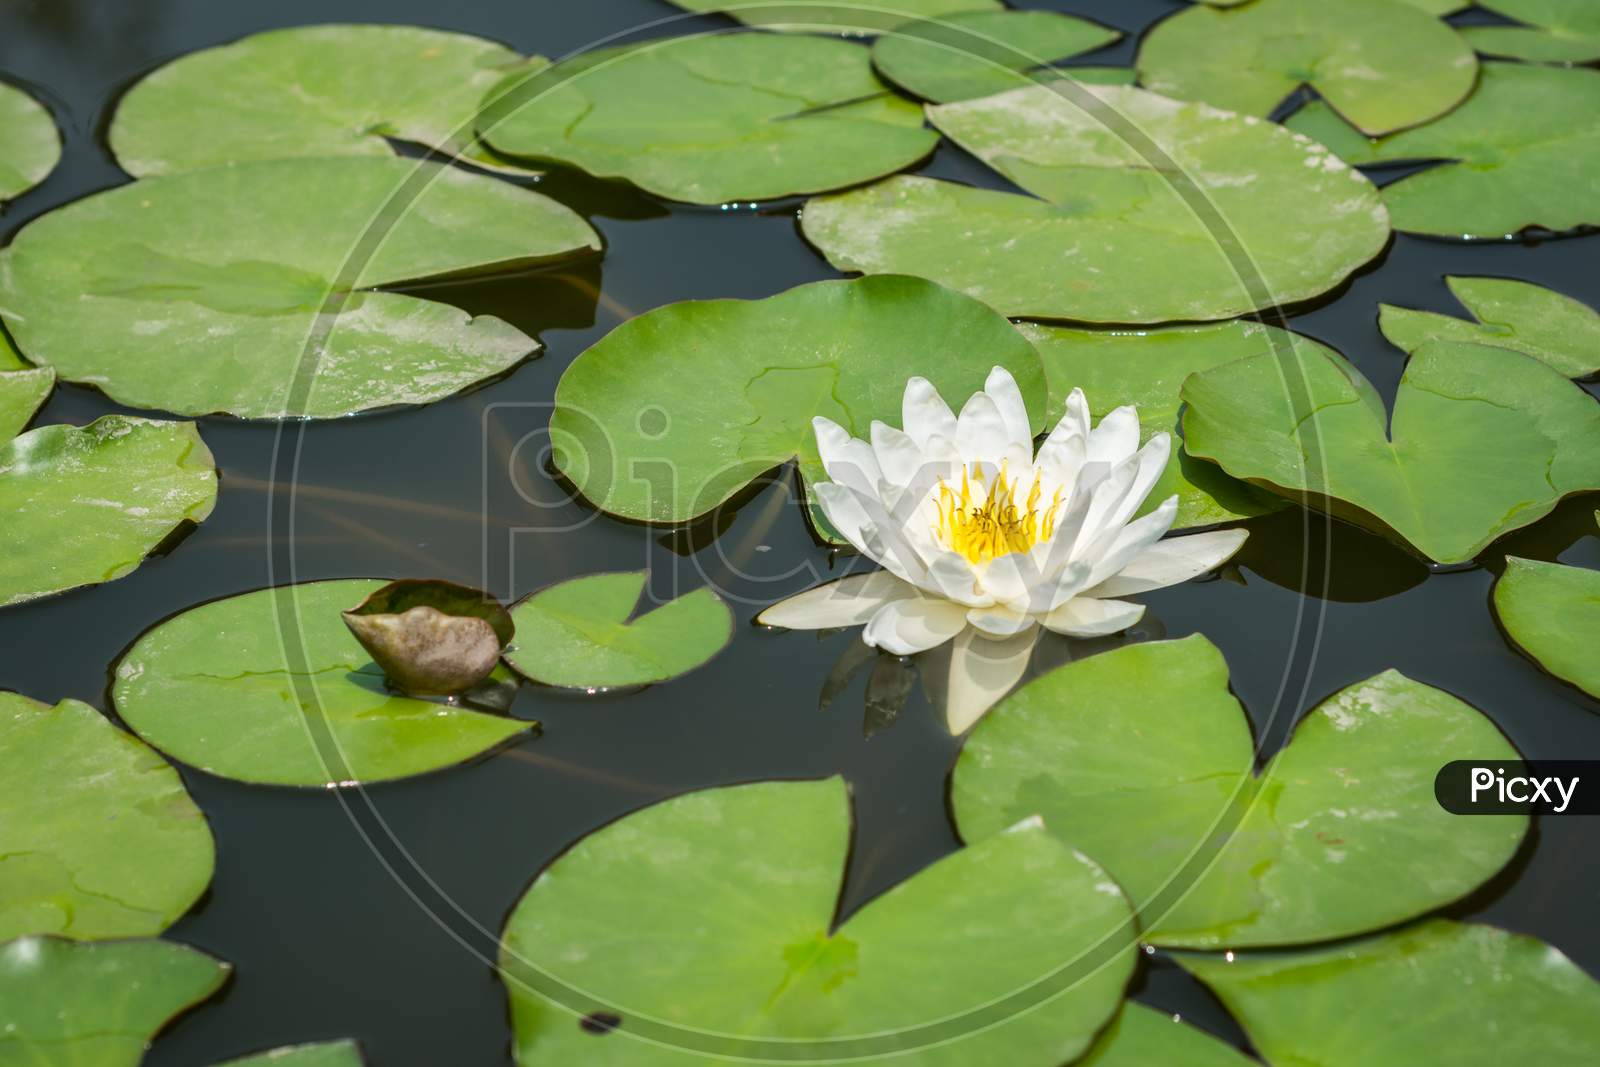 Nymphaea Lotus, White Lotus Flowering In A Pond